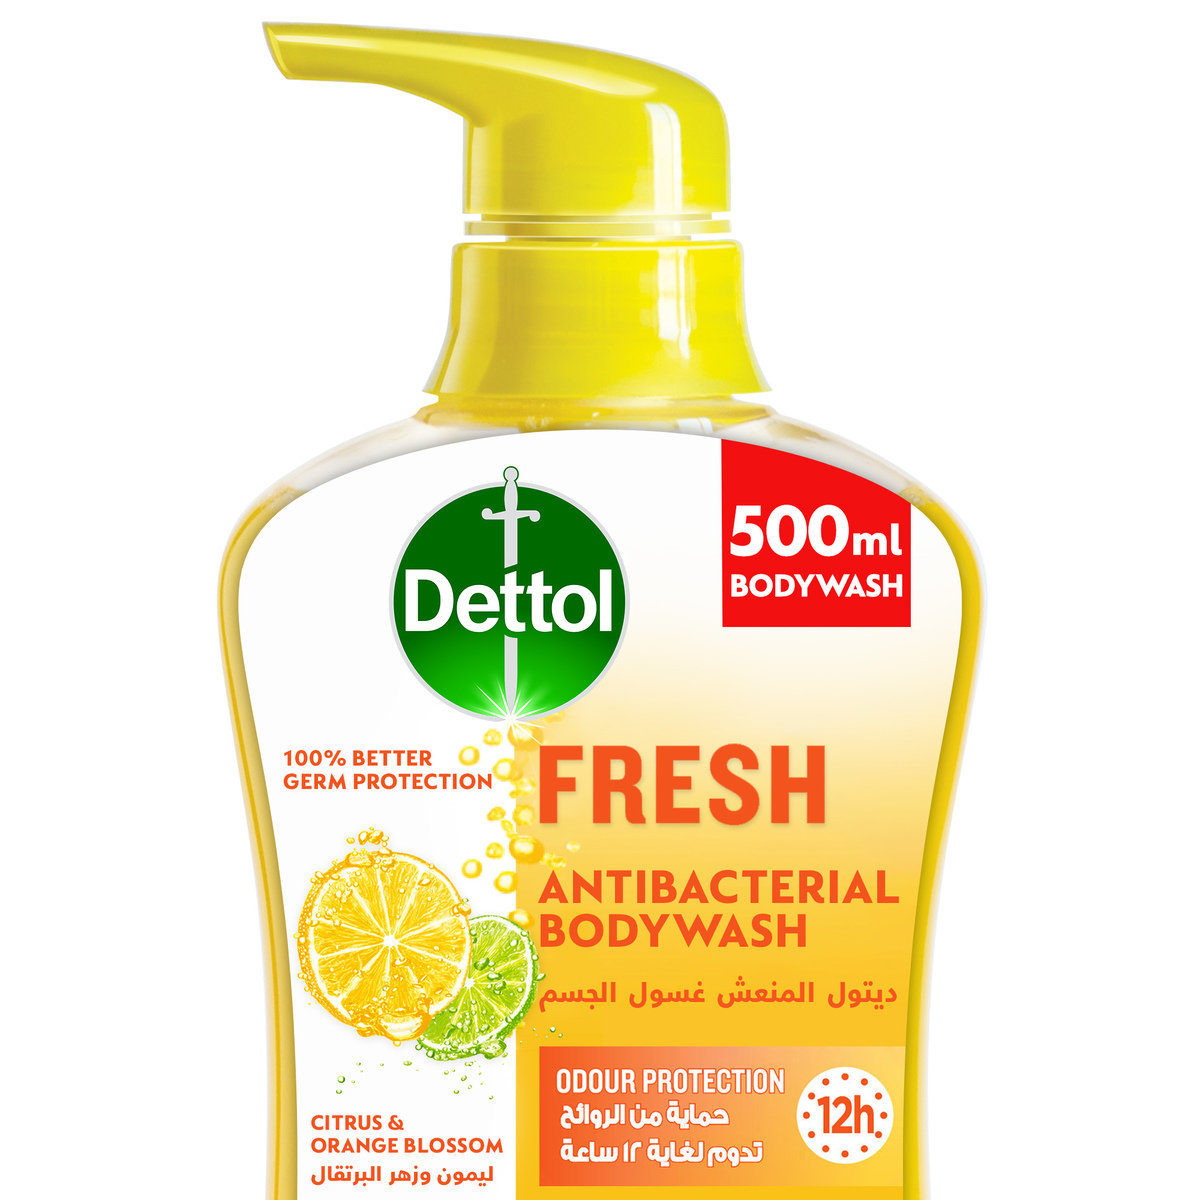 اشتري قم بشراء ديتول غسول الجسم المنعش المضاد للبكتيريا 500 مل Online at Best Price من الموقع - من لولو هايبر ماركت Shower Gel&Body Wash في السعودية